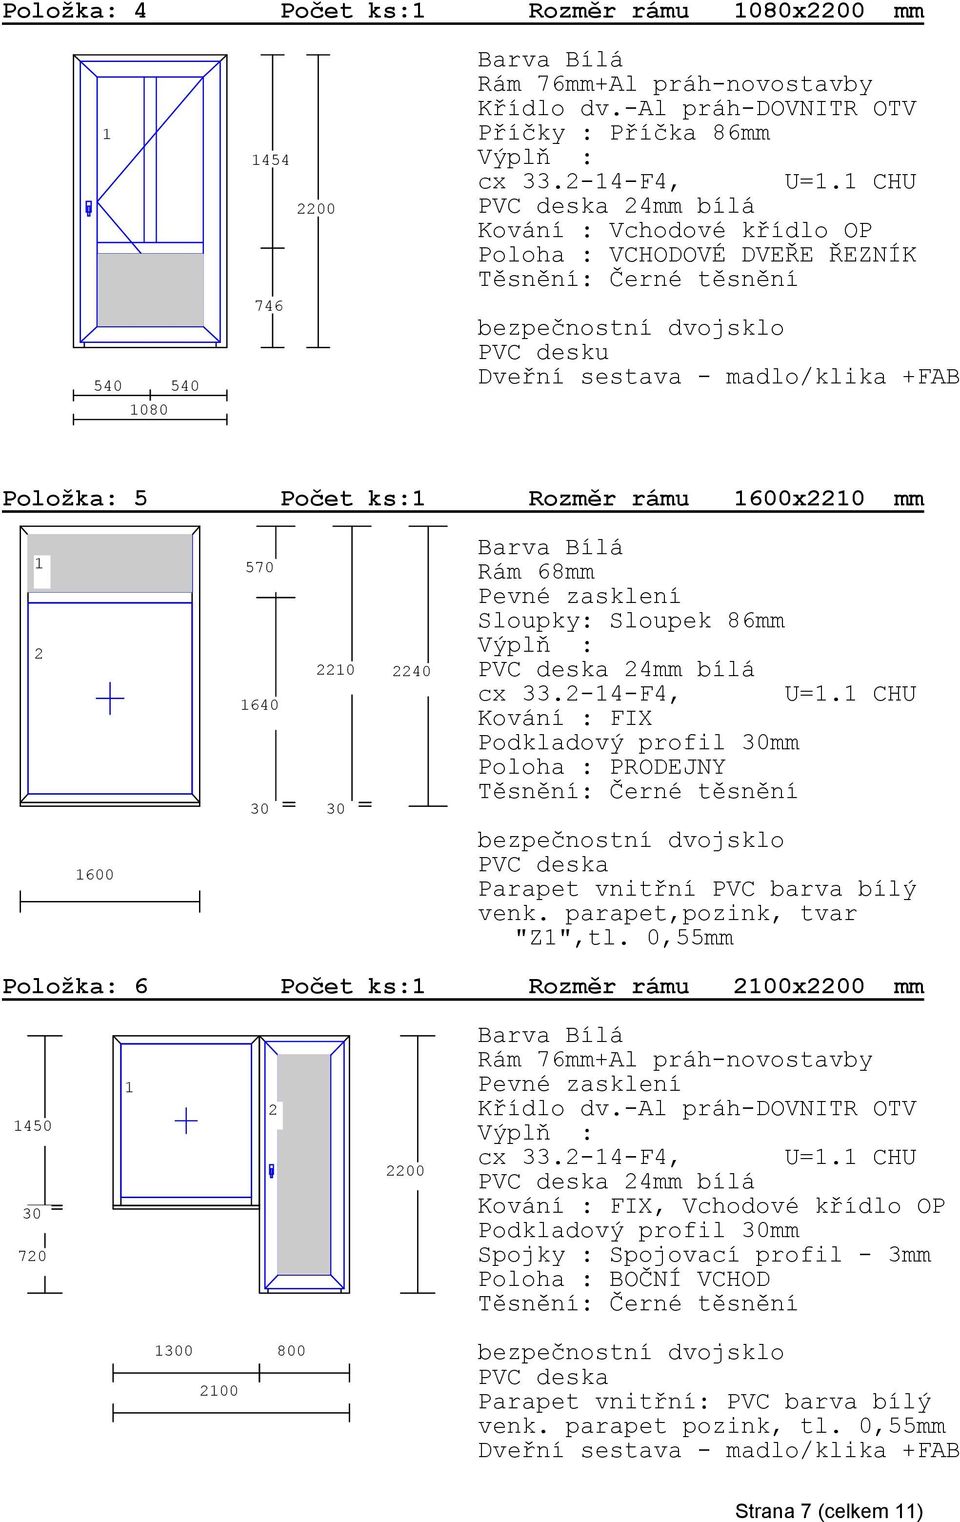 2-4-F4, U=. CHU FIX Podkladový profil mm Poloha : PRODEJNY PVC deska Parapet vnitřní PVC barva bílý venk. parapet,pozink, tvar "Z",tl.